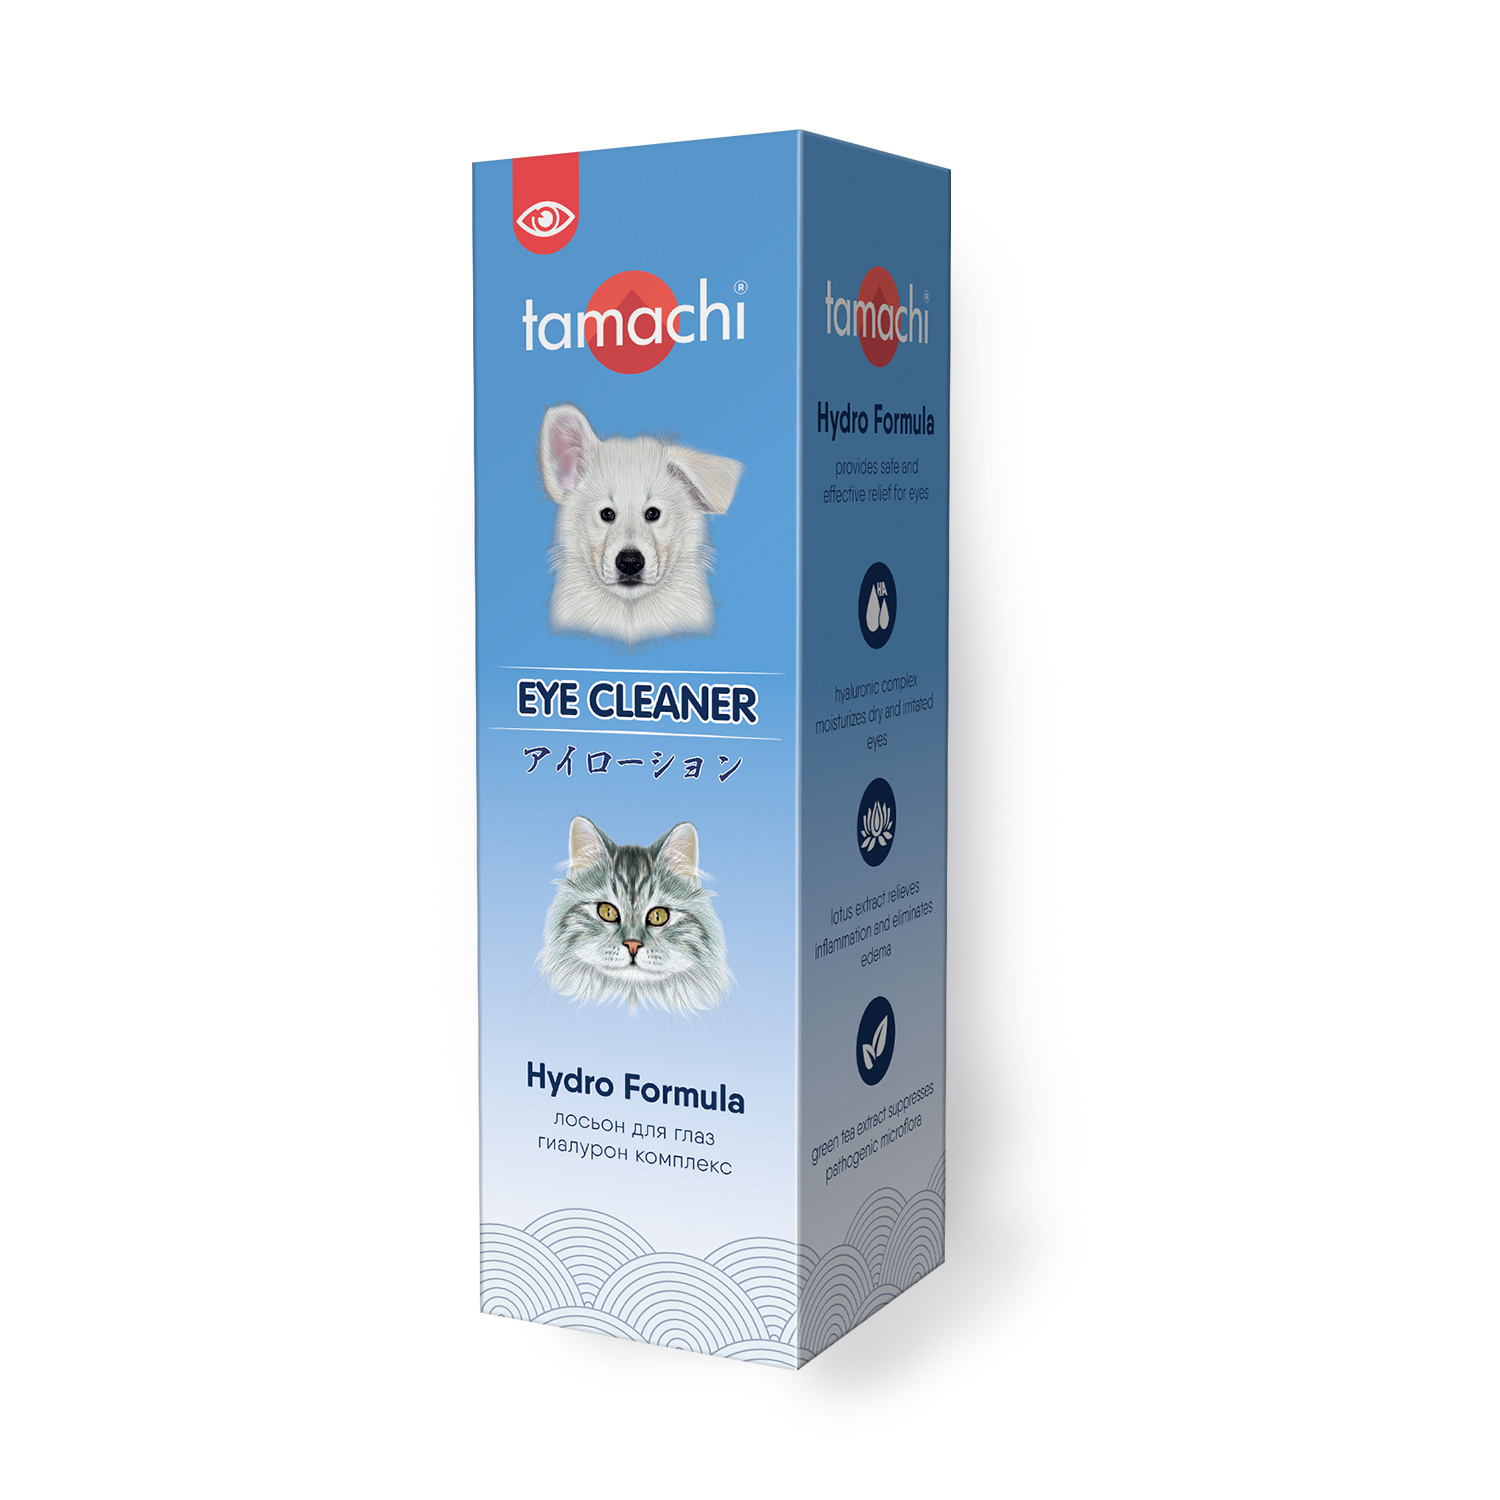 Tamachi Tamachi лосьон для глаз, 110 мл (140 г) tamachi tamachi жидкость для полости рта 100 мл 132 г